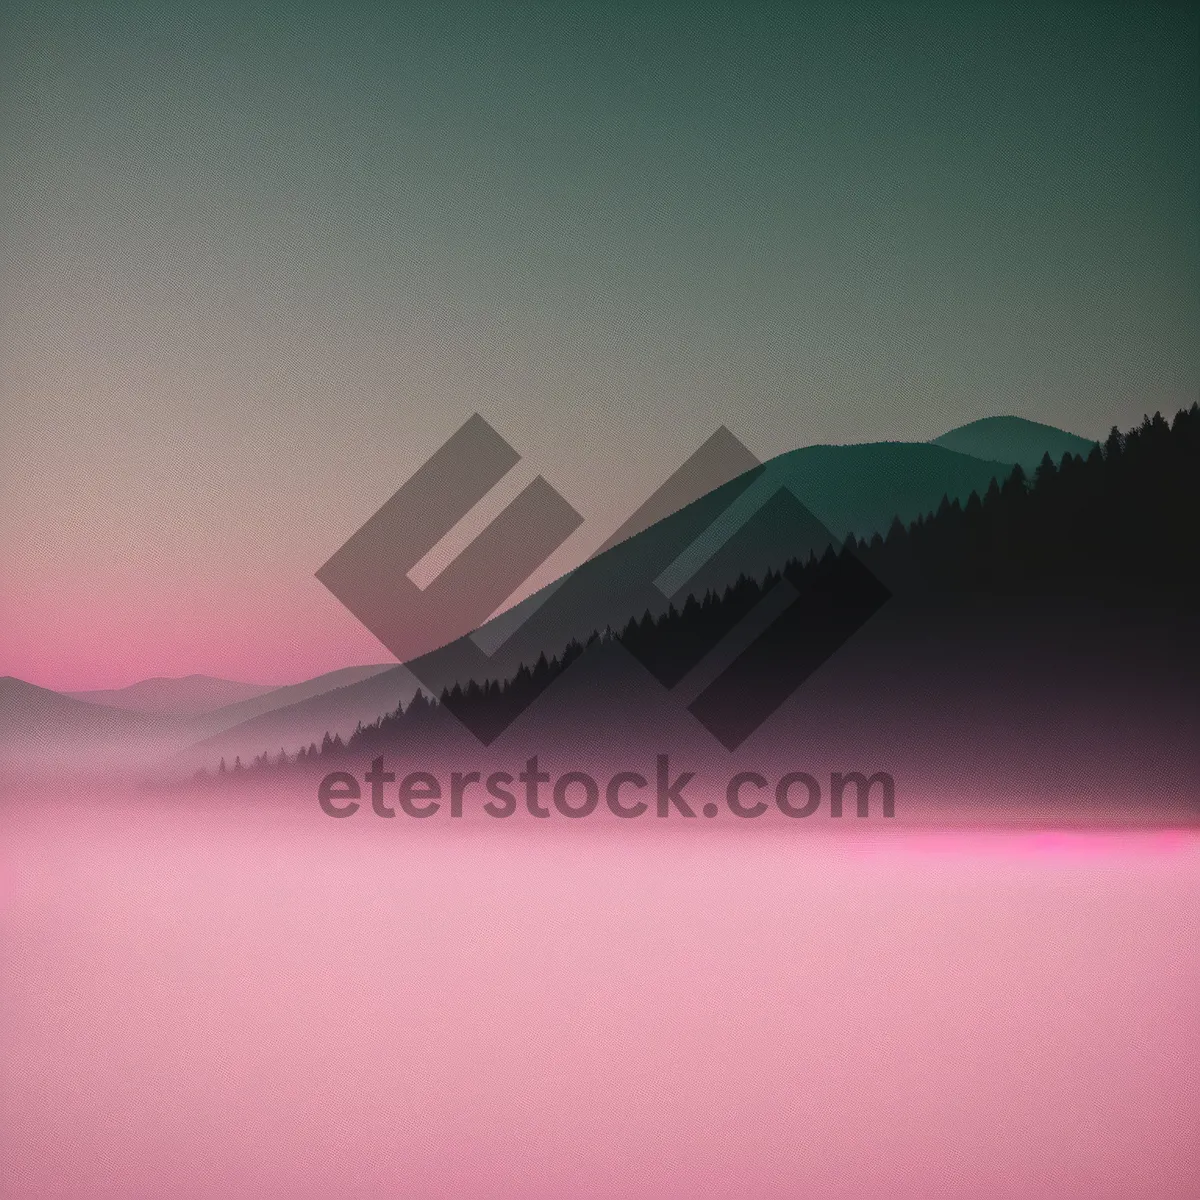 Picture of Futuristic Sunset Sky Art - Creative Digital Landscape